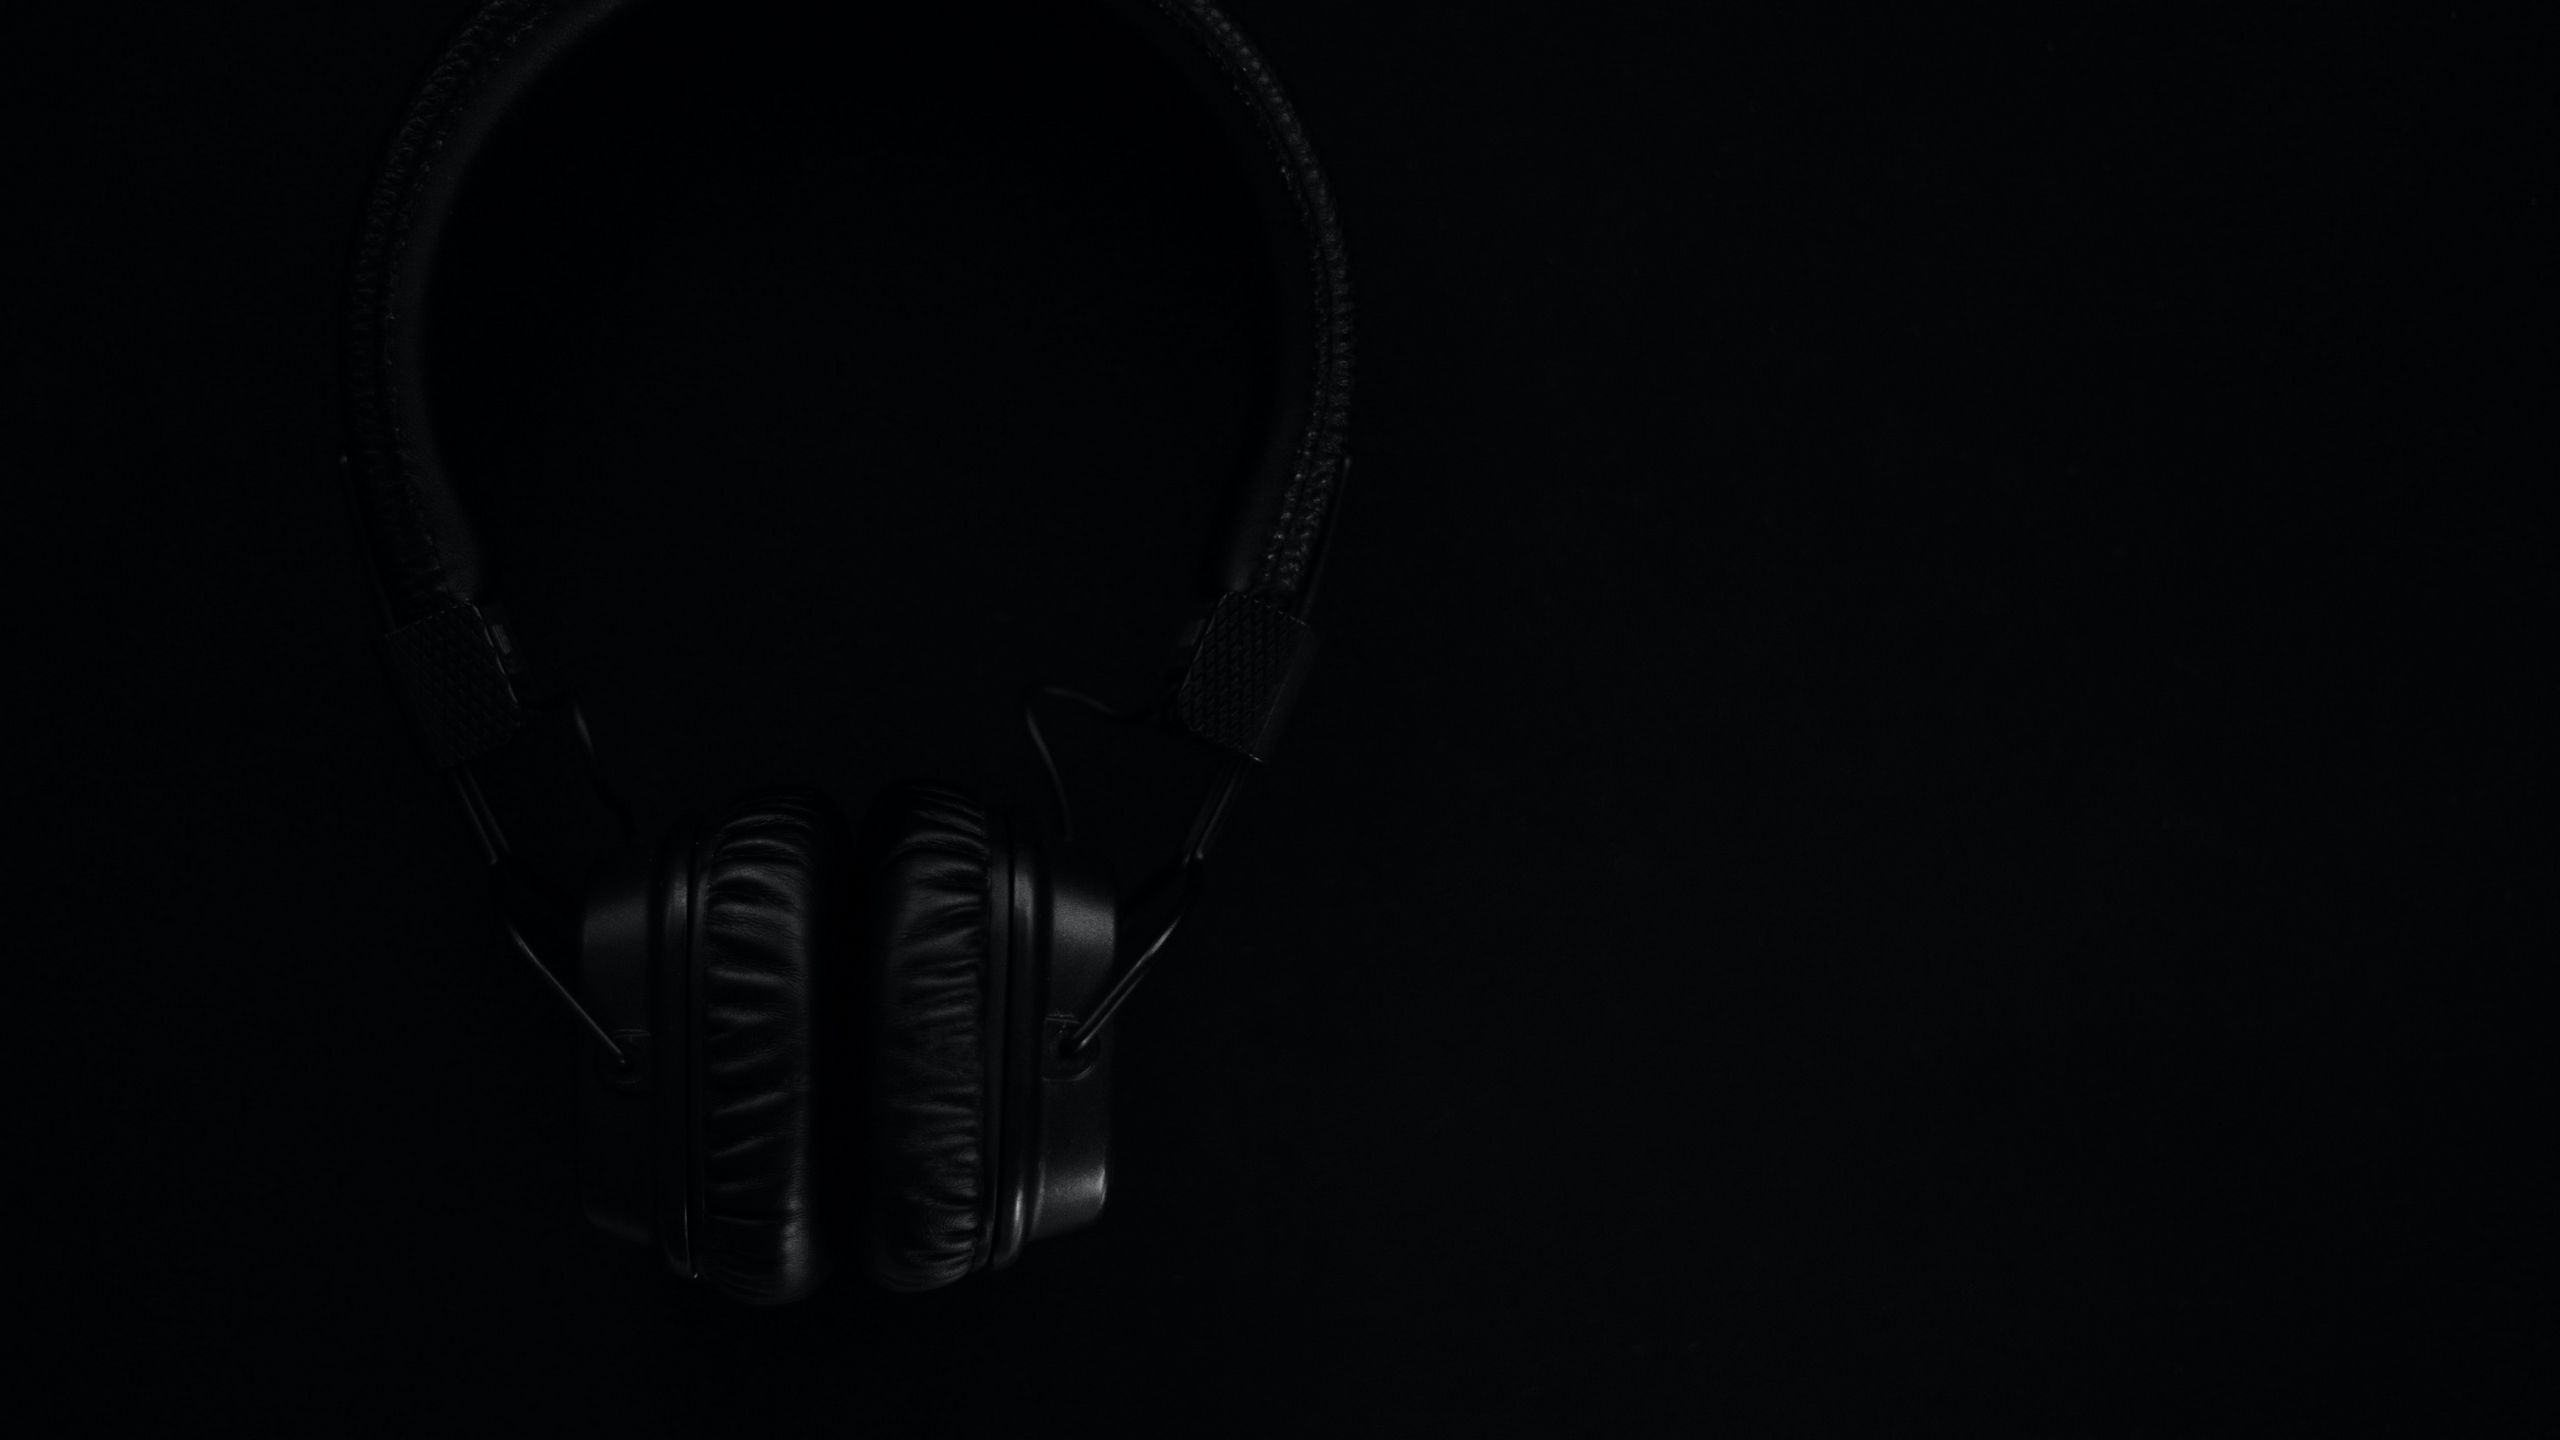 Download wallpaper 2560x1440 headphones, black, dark, music widescreen 16:9  hd background